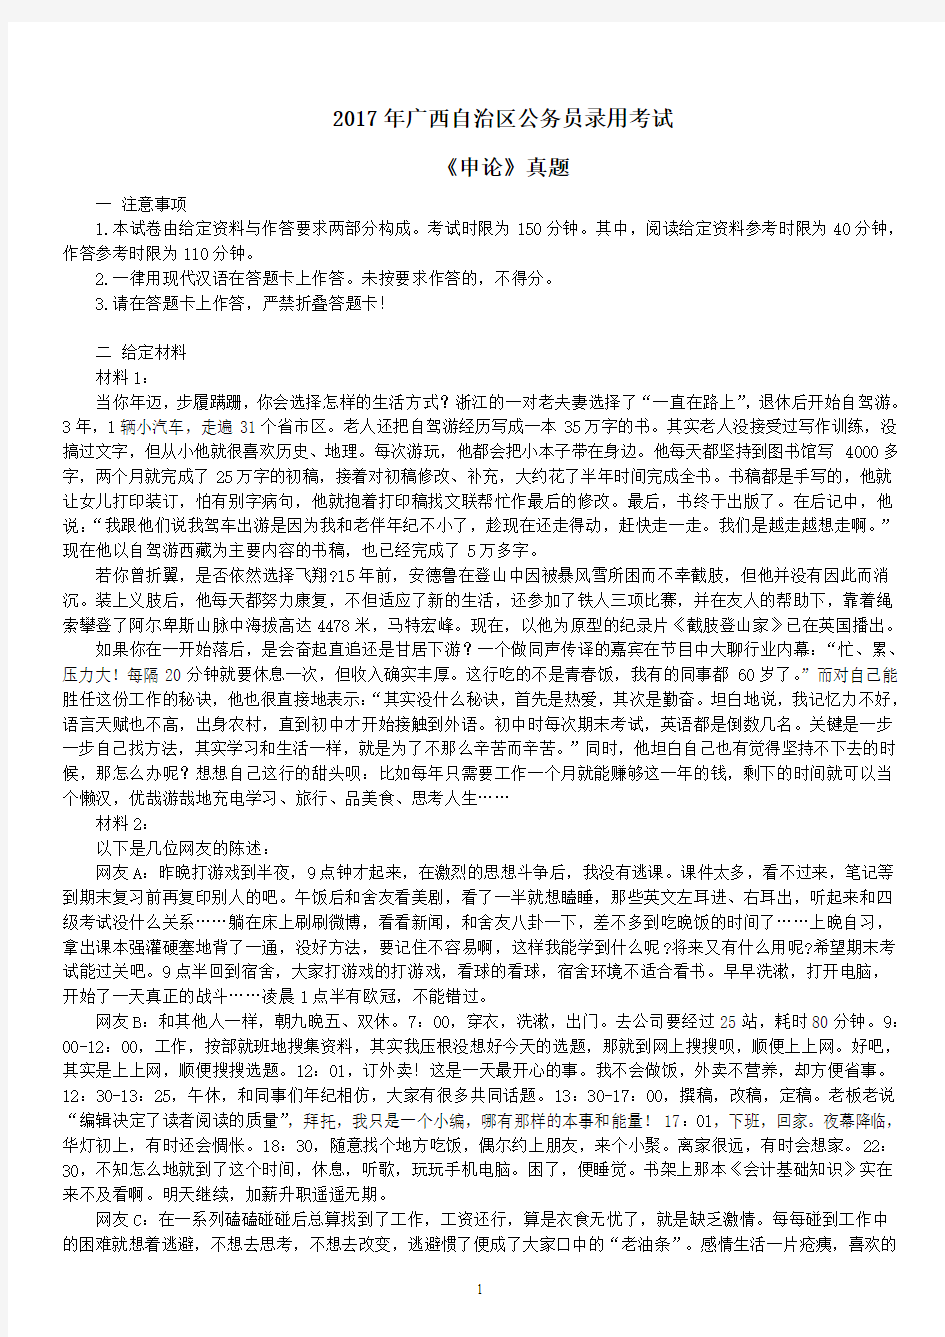 2017年广西自治区公务员录用考试《申论》真题及标准答案